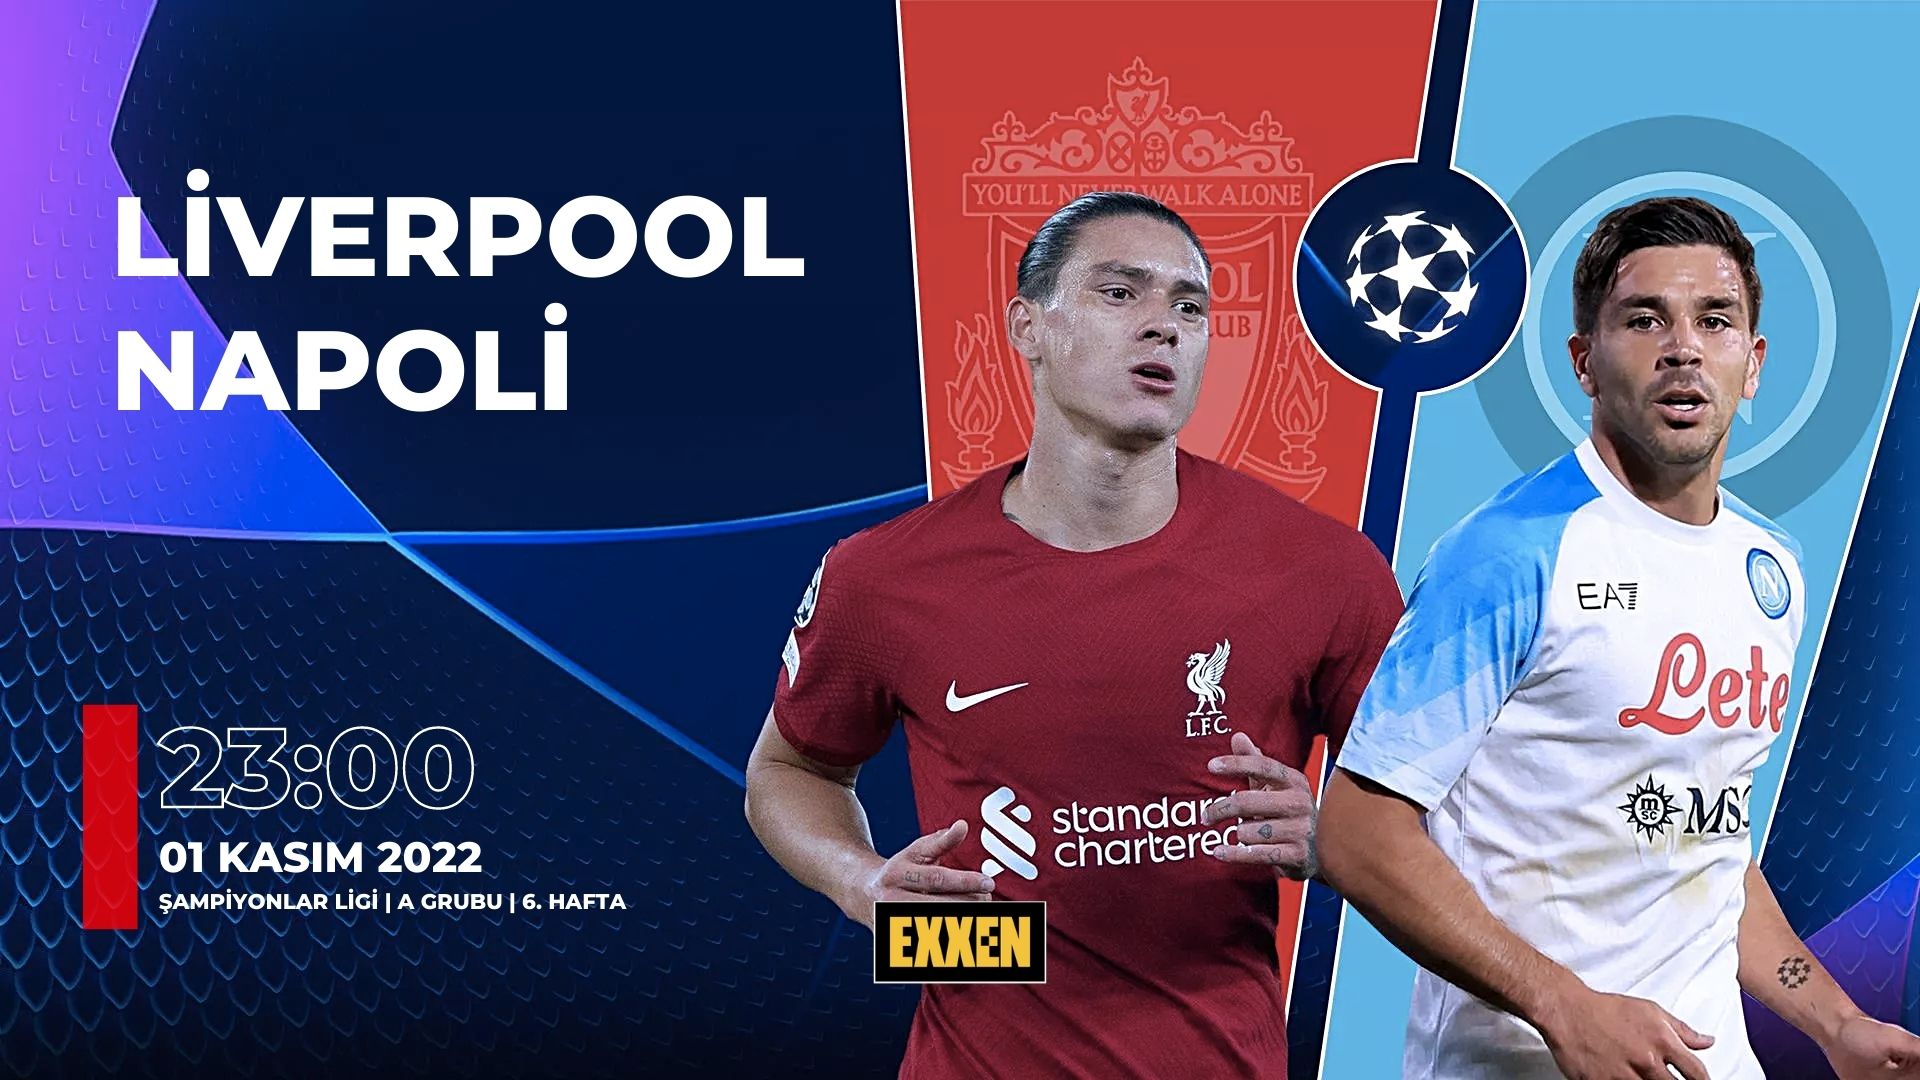 CANLI | Liverpool – Napoli UEFA Şampiyonlar Ligi Maçı Canlı İzle (Exxen)